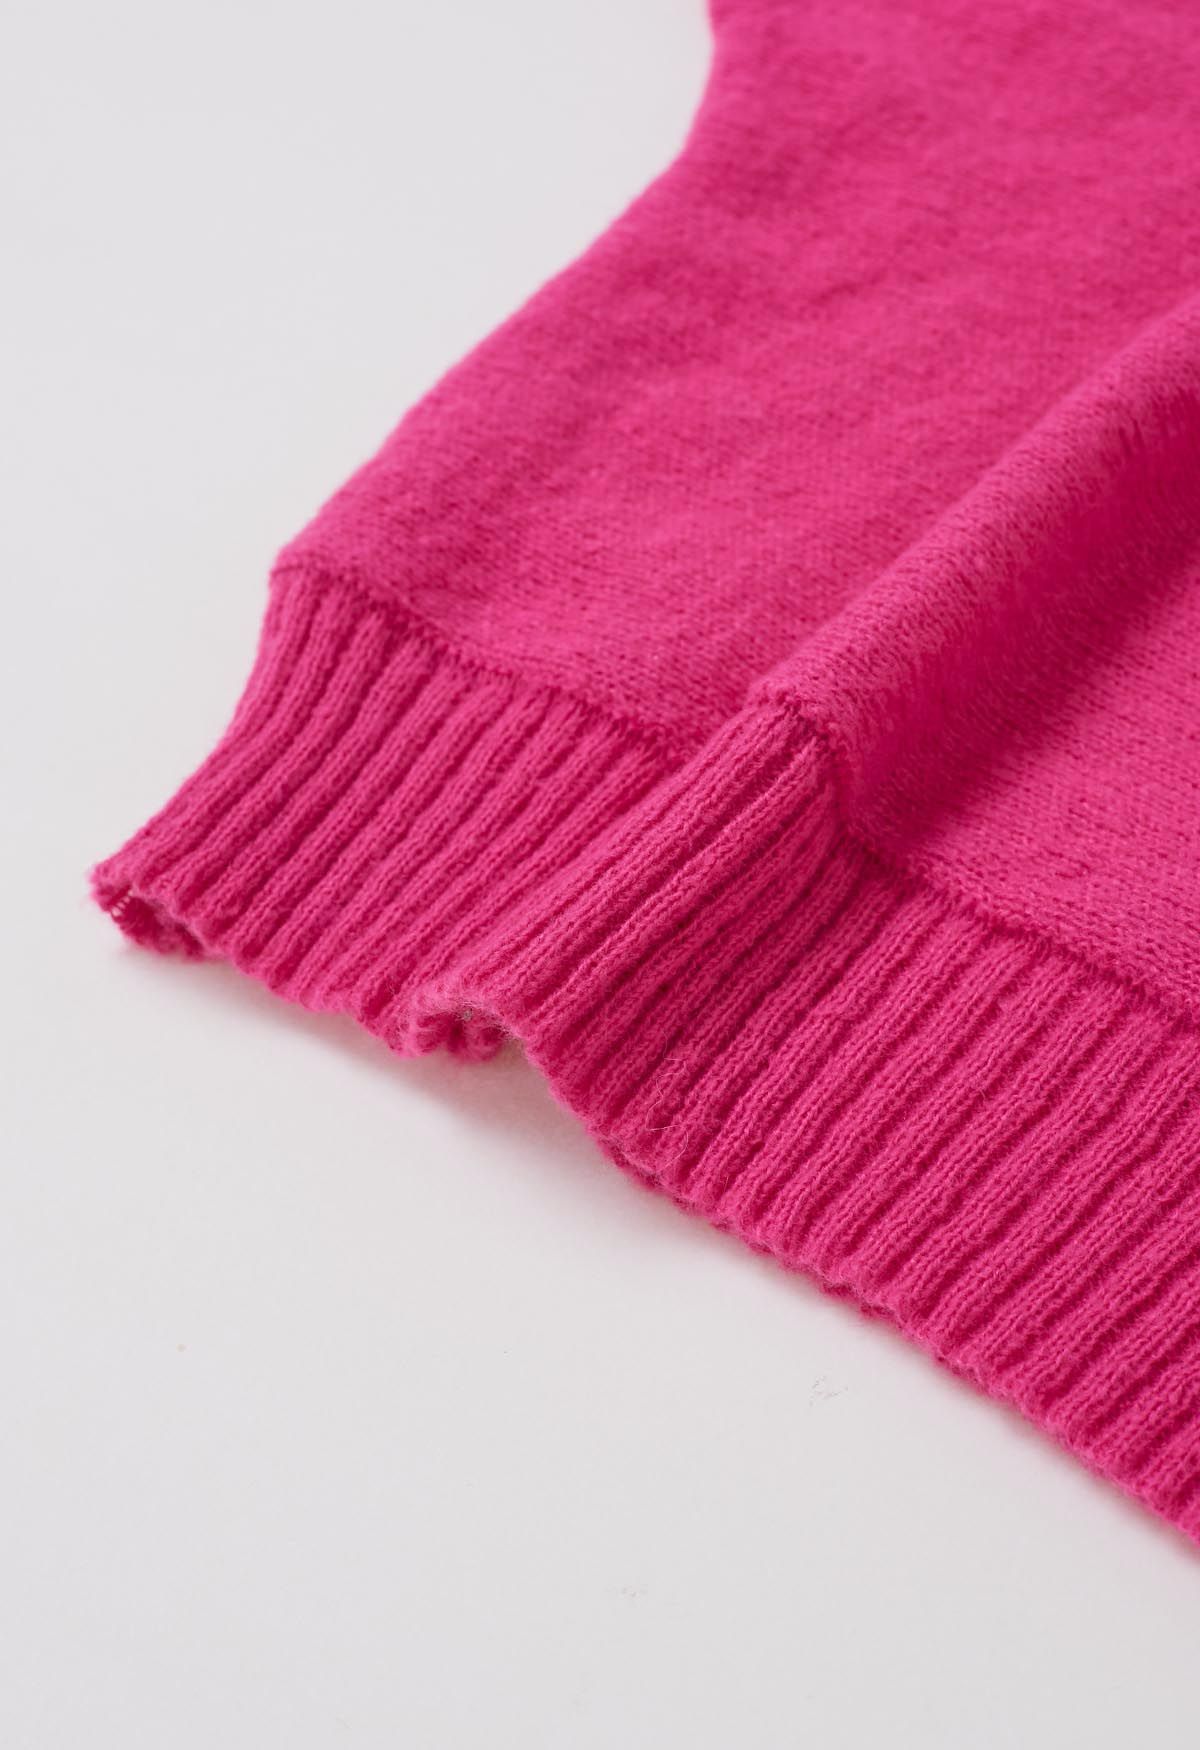 Suéter de punto con mangas de murciélago y cuello alto alegre en rosa fuerte